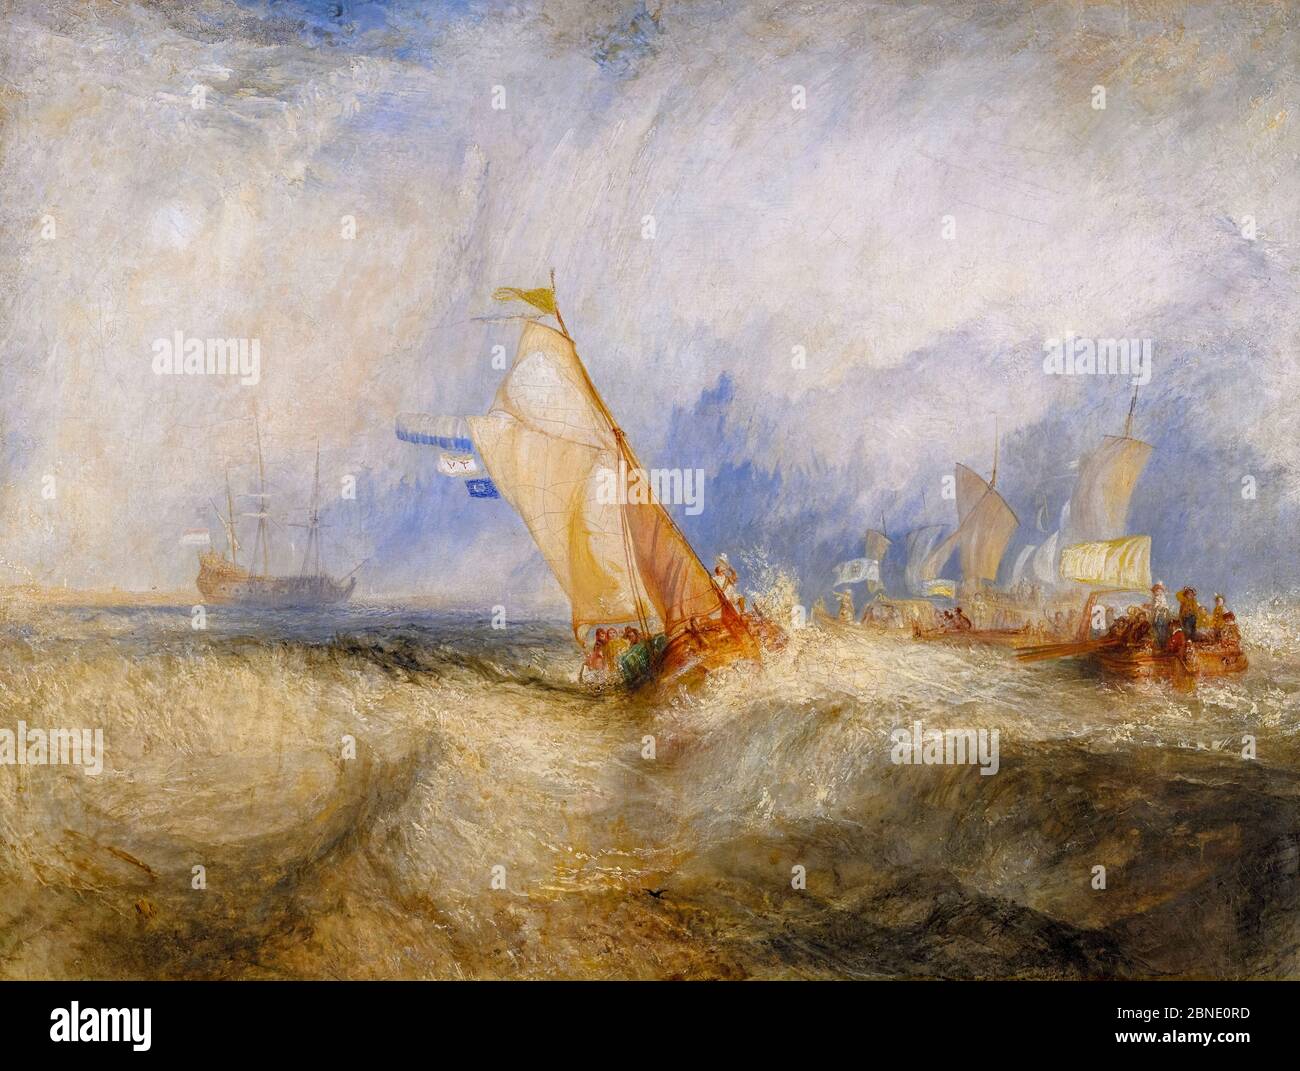 Van Tromp, andando a compiacere i suoi Maestri, navi in mare, ottenendo una buona bagnatura da JMW Turner (1775-1851), olio su tela, 1844 Foto Stock